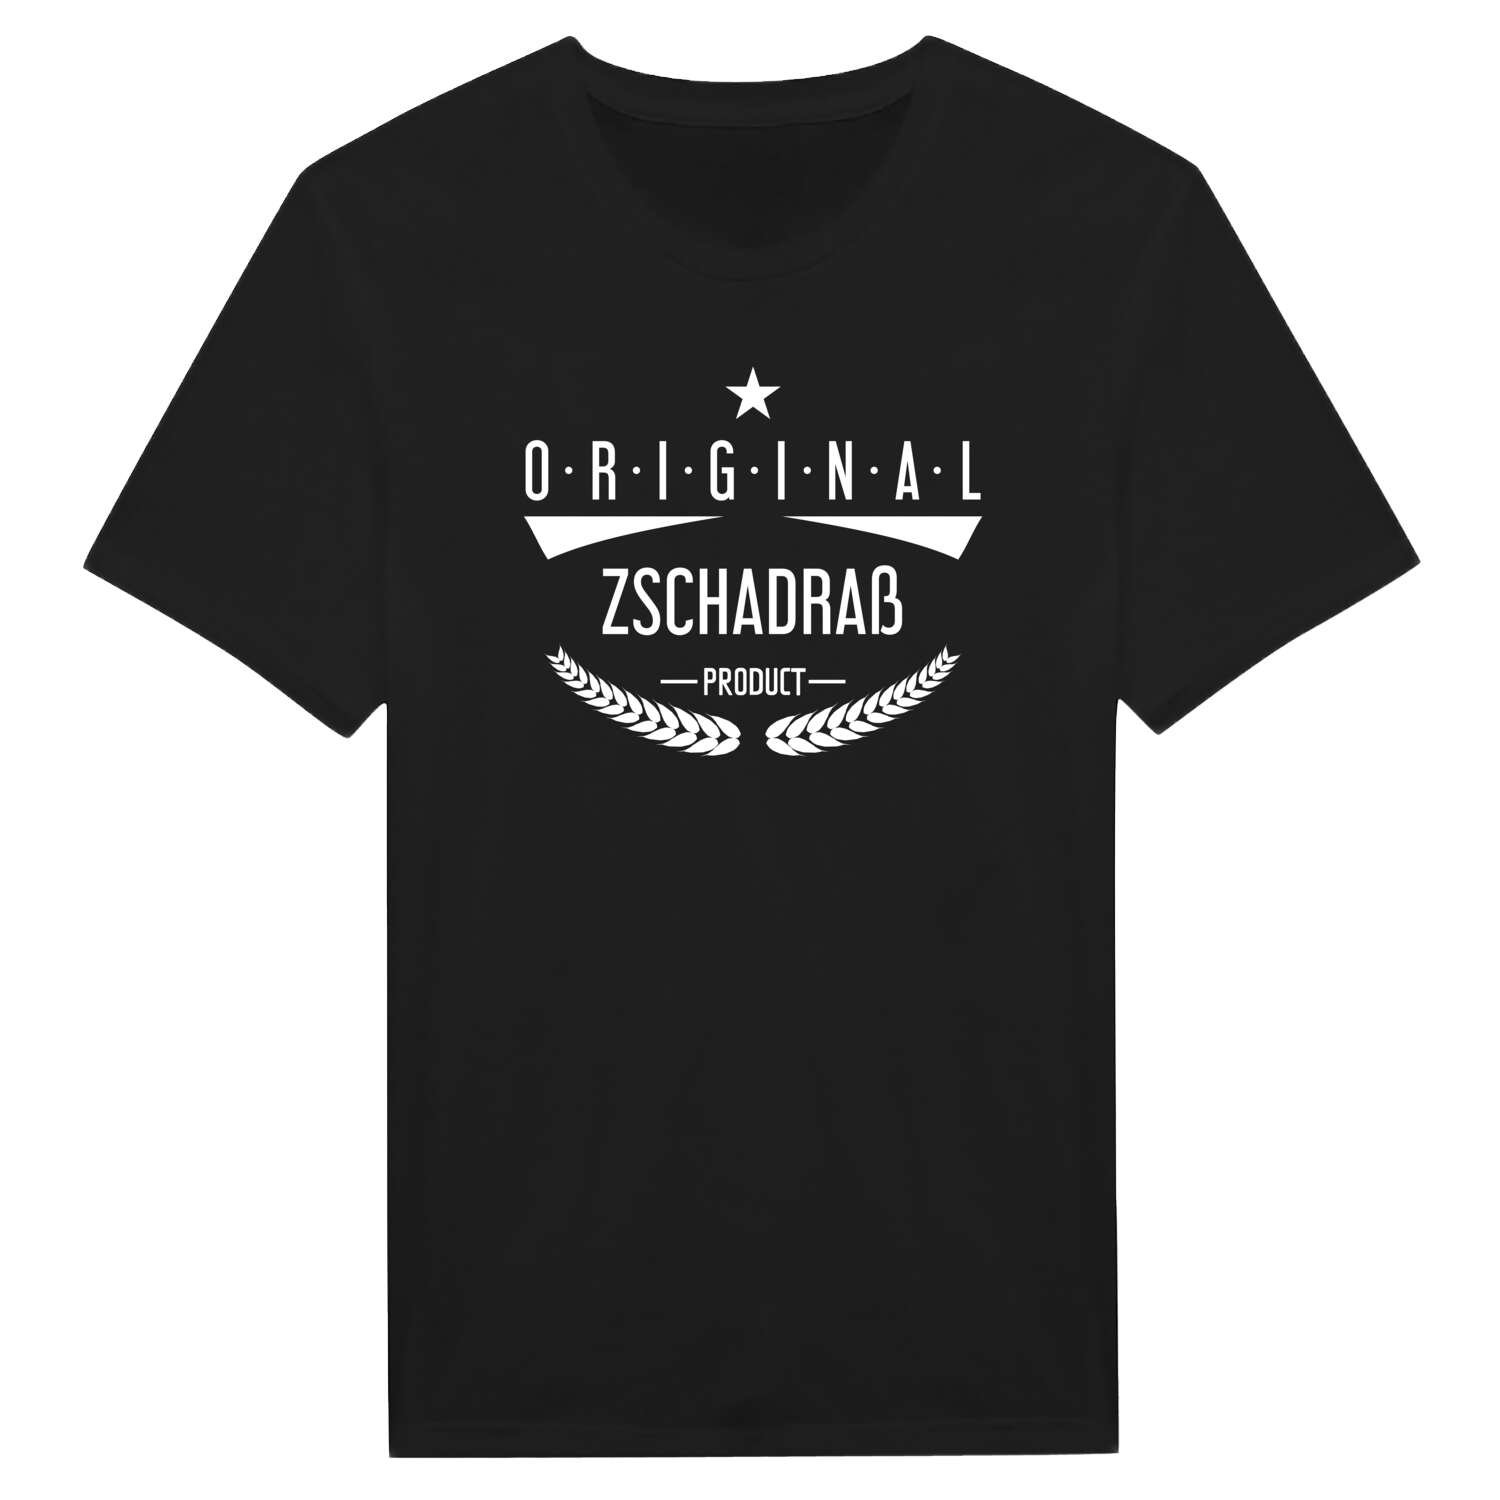 Zschadraß T-Shirt »Original Product«